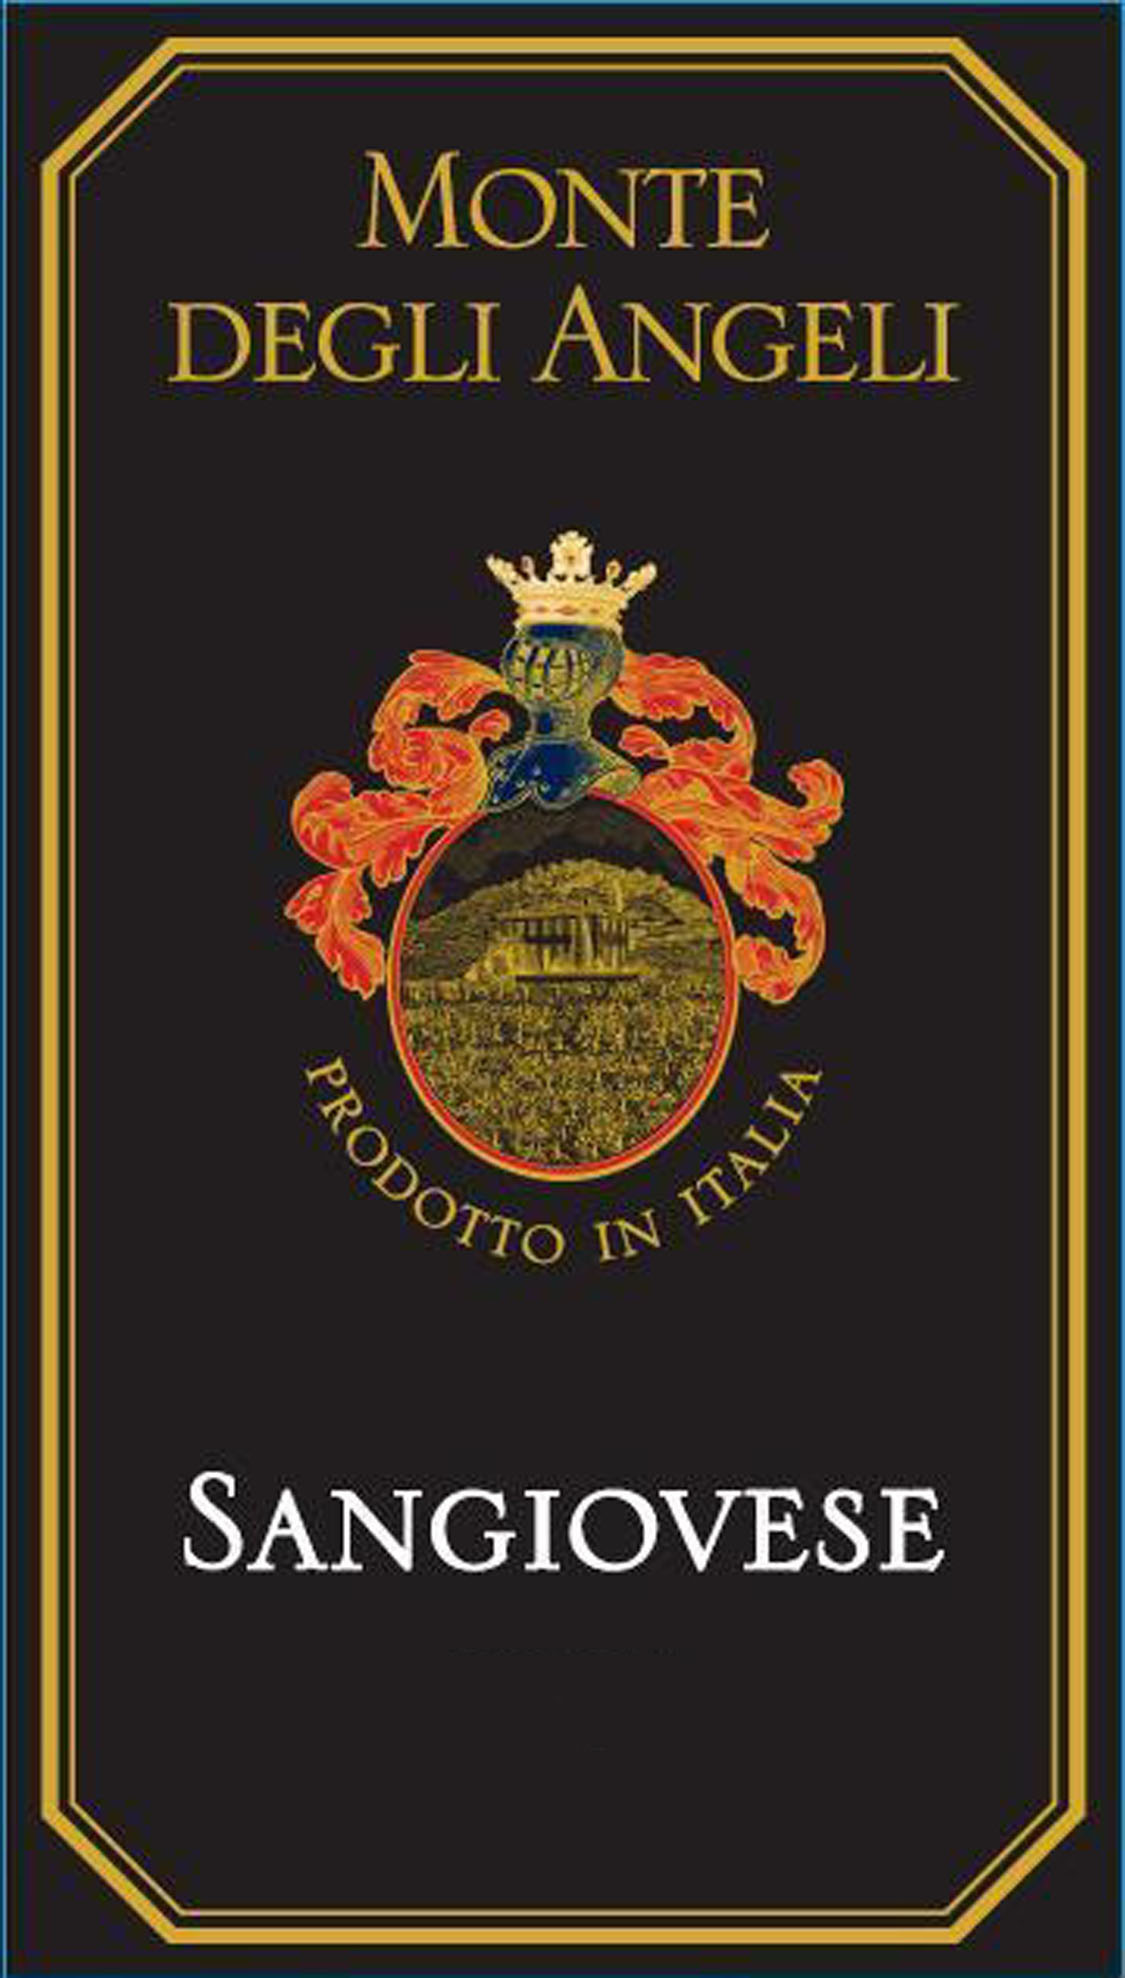 Monte Degli Angeli - Sangiovese label